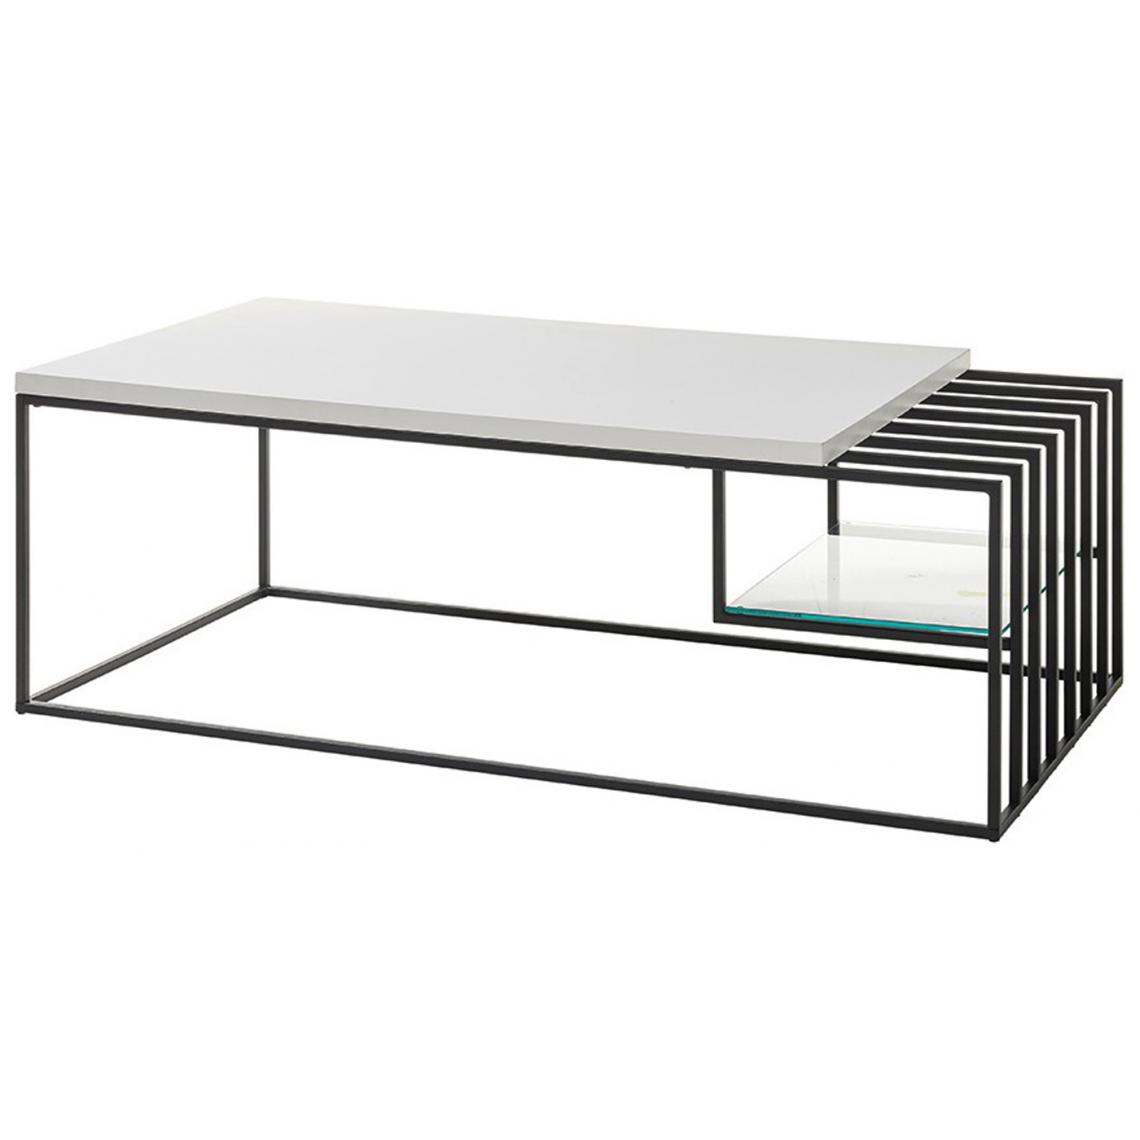 Pegane - Table basse en métal coloris blanc mat / noir - L.120 x H.40 x P.60 cm - Tables basses